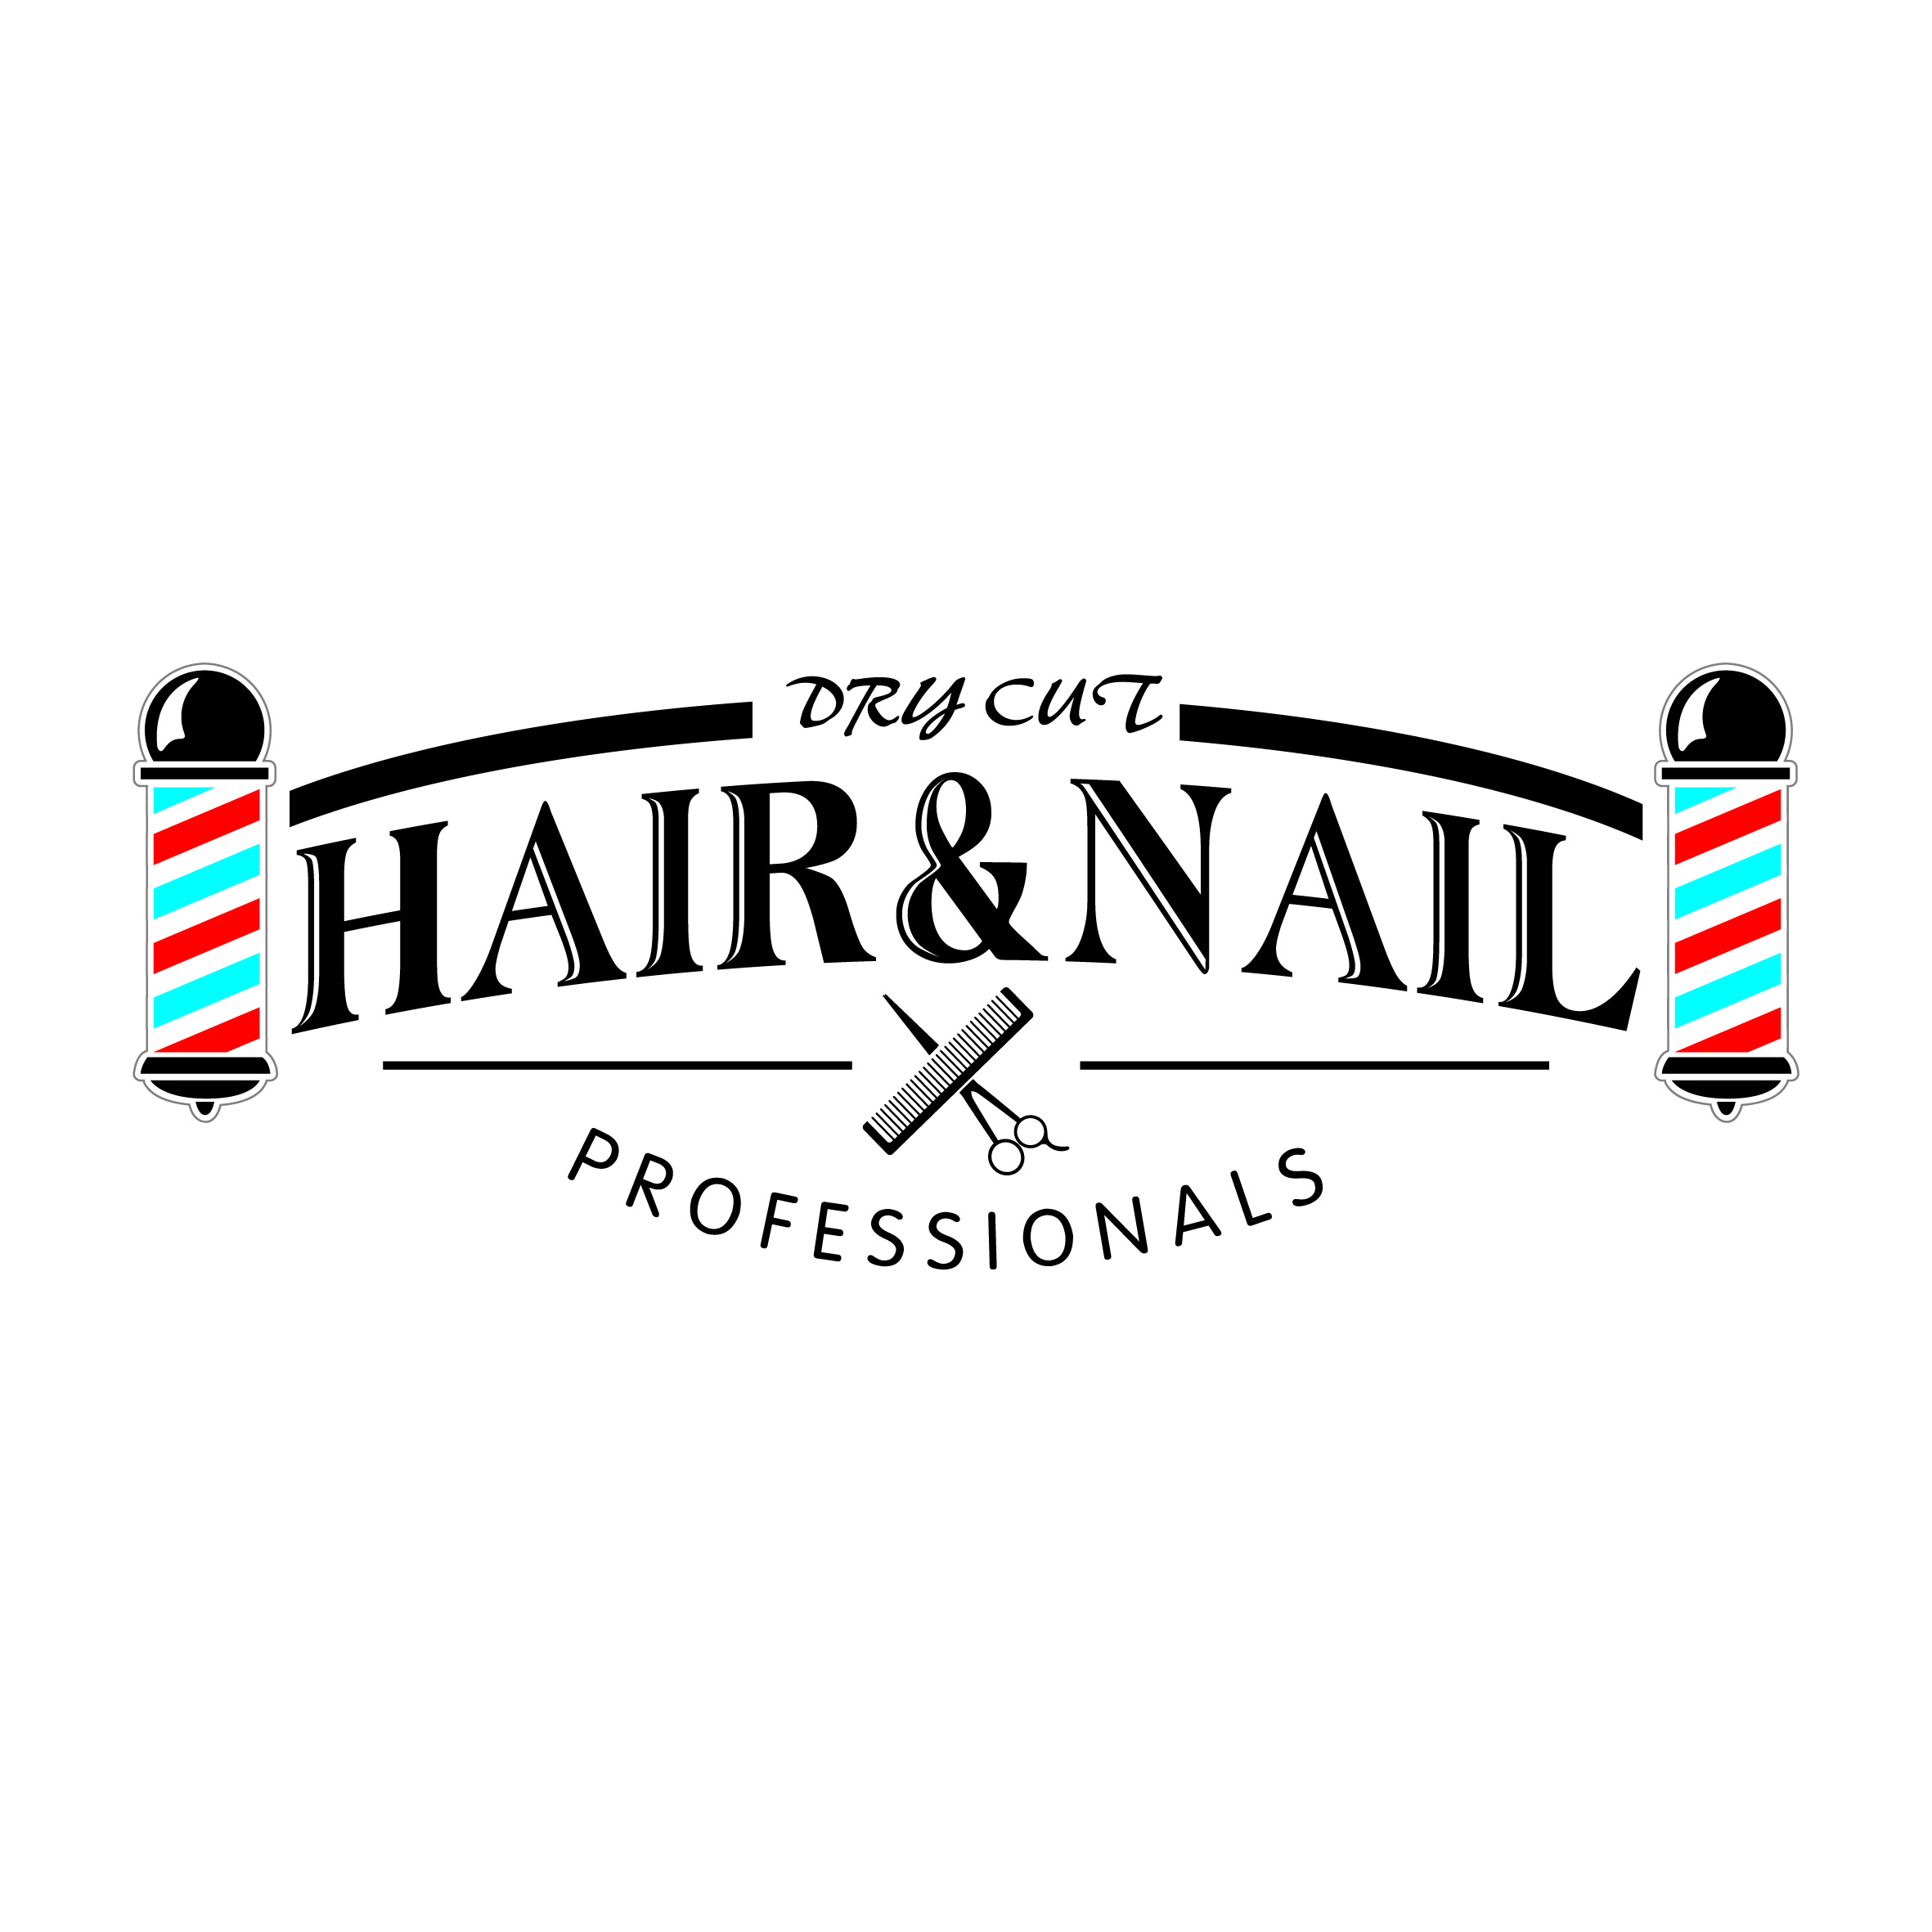 香港美髮網 HK Hair Salon 髮型屋Salon / 髮型師: DryCutHairShop